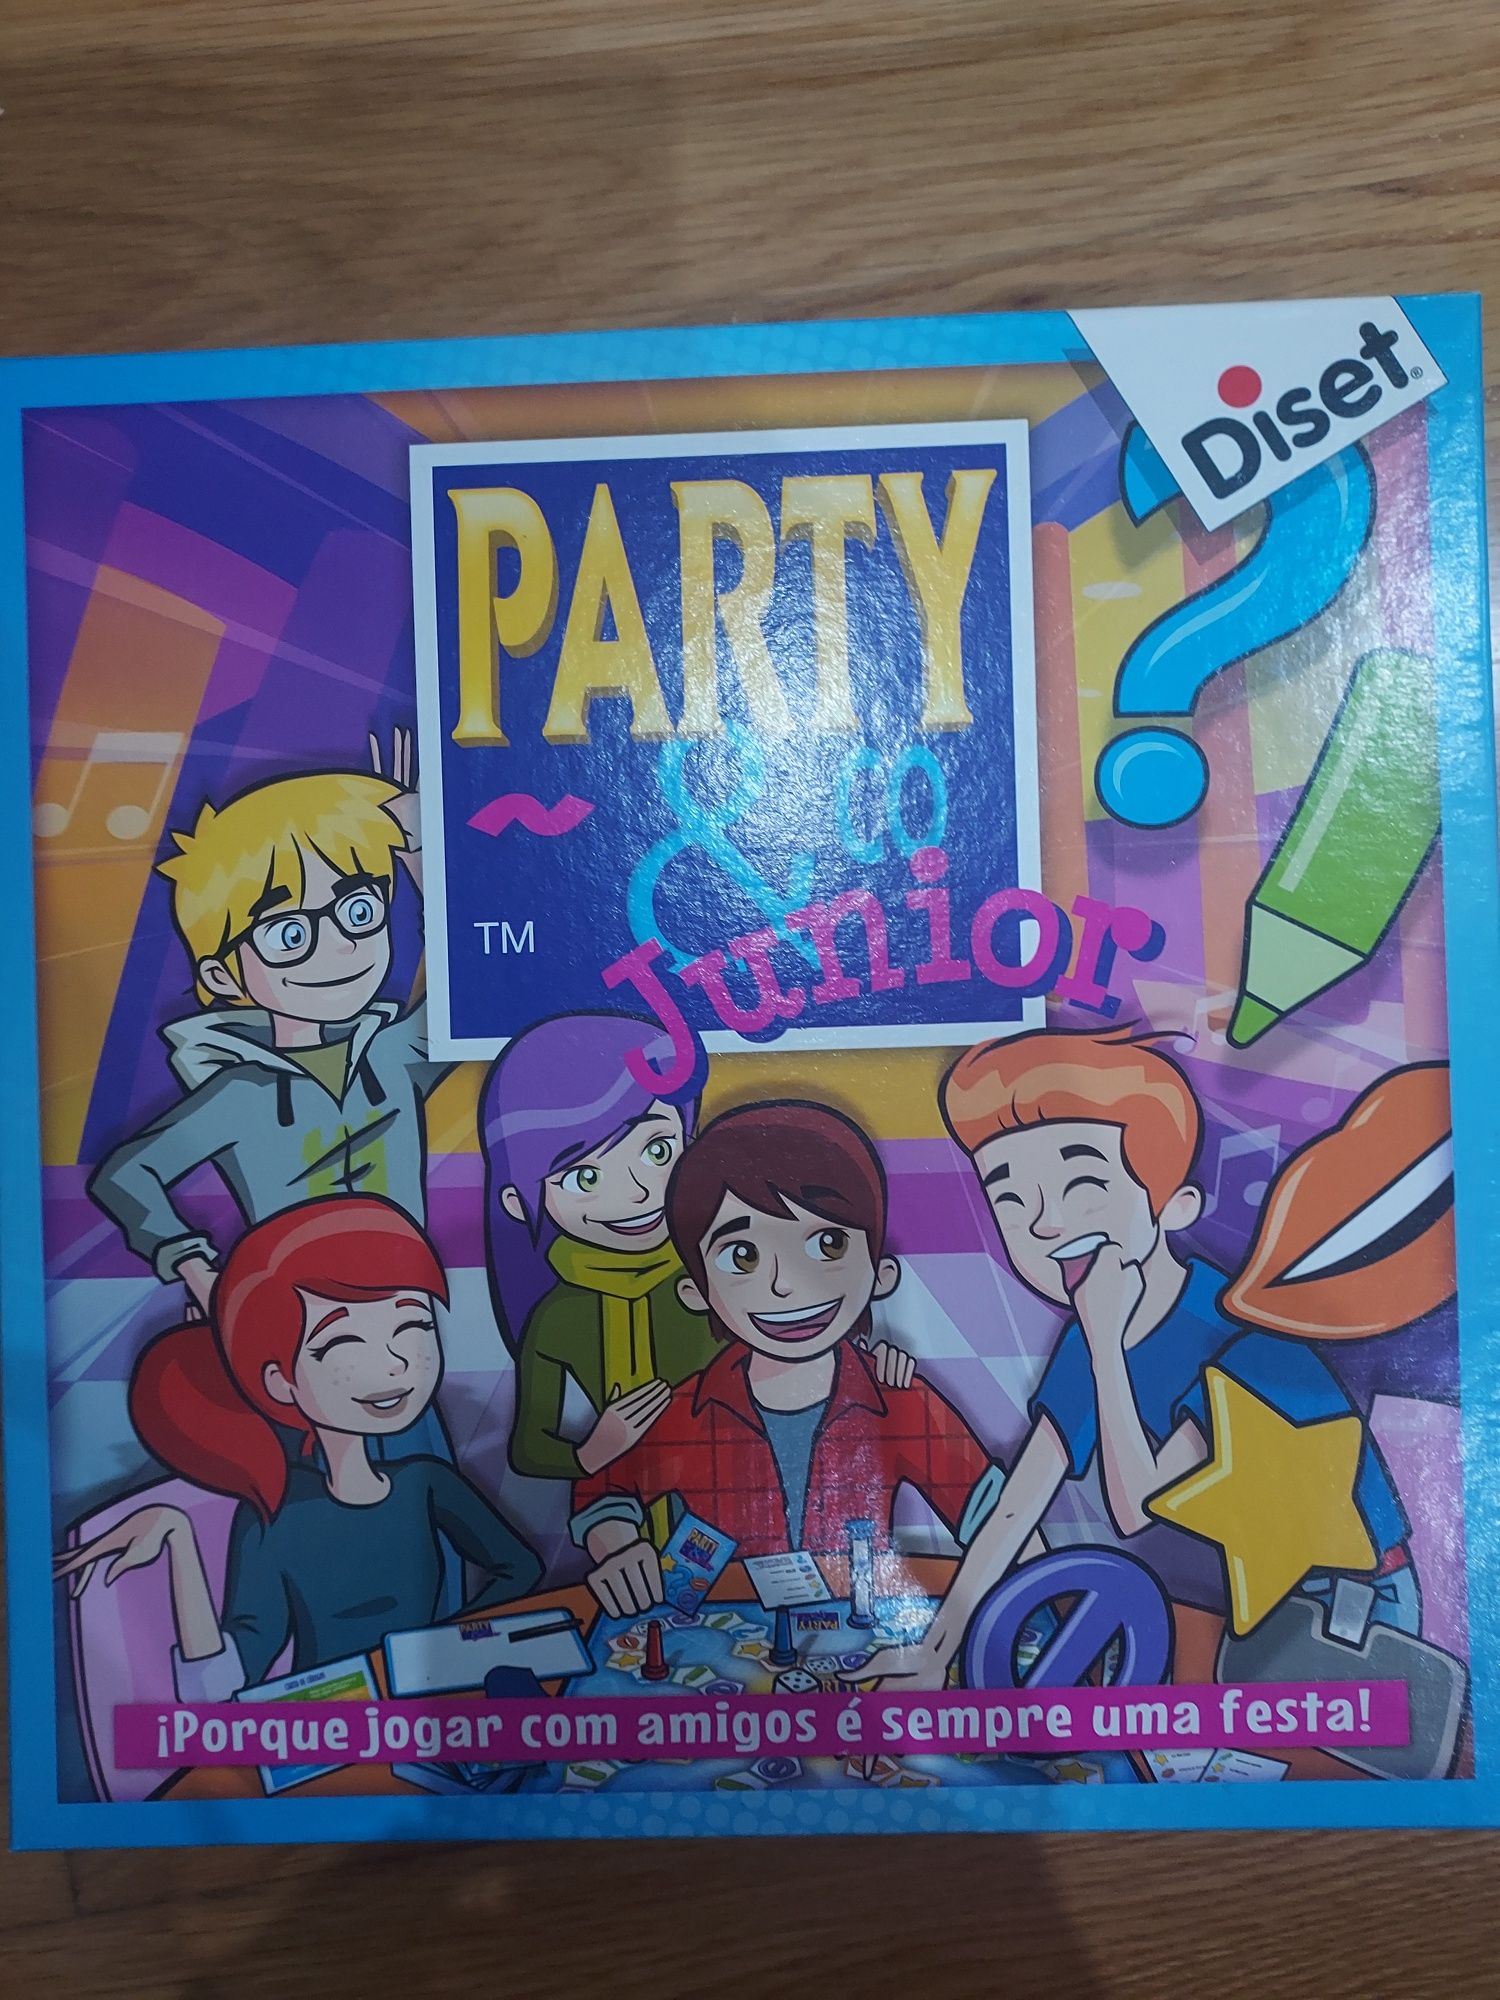 Jogo " Party & Go Junior"